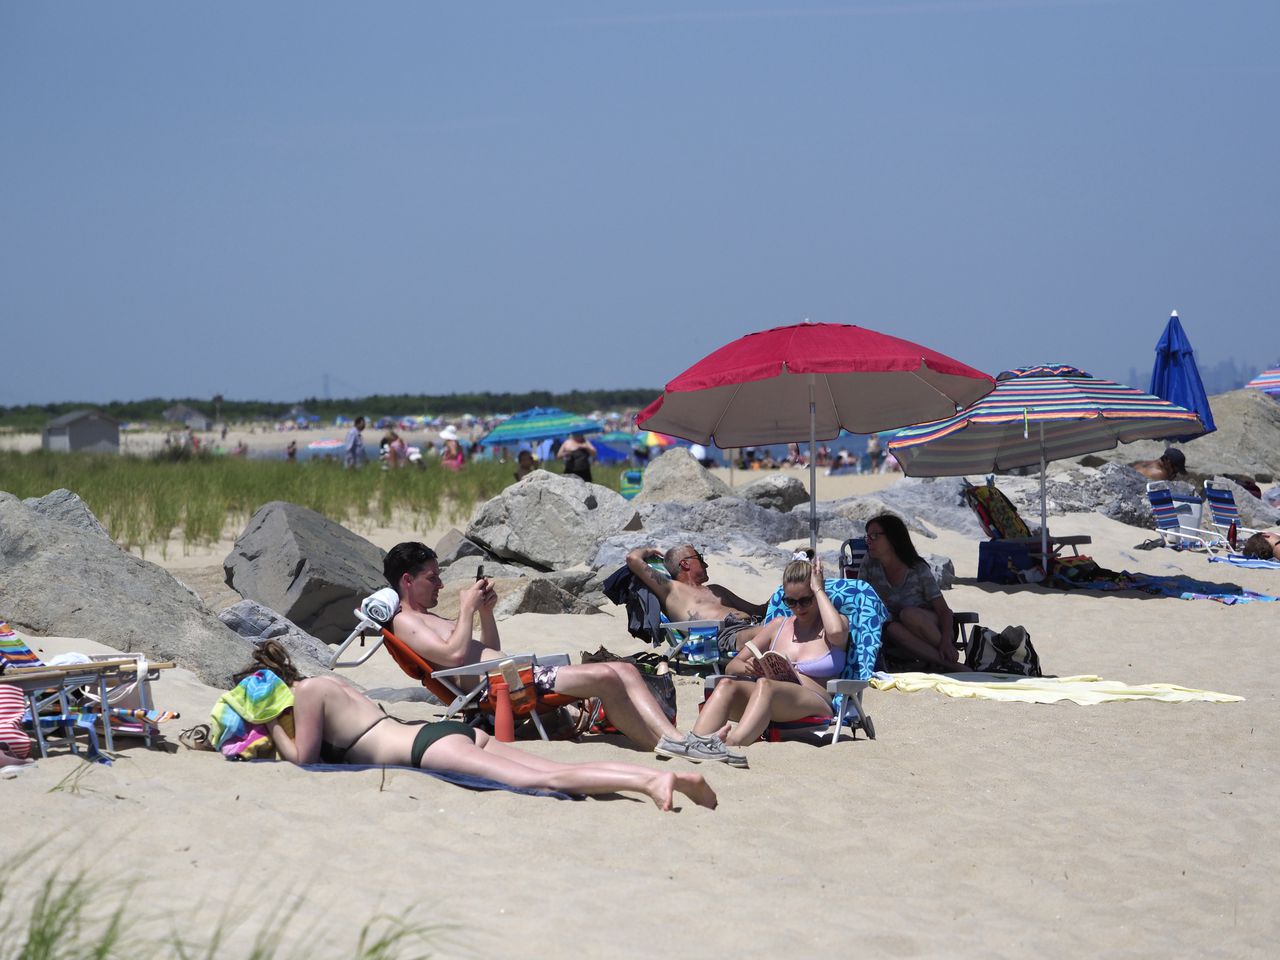 benildus fernando recommends Nude Beach In Sandy Hook Nj